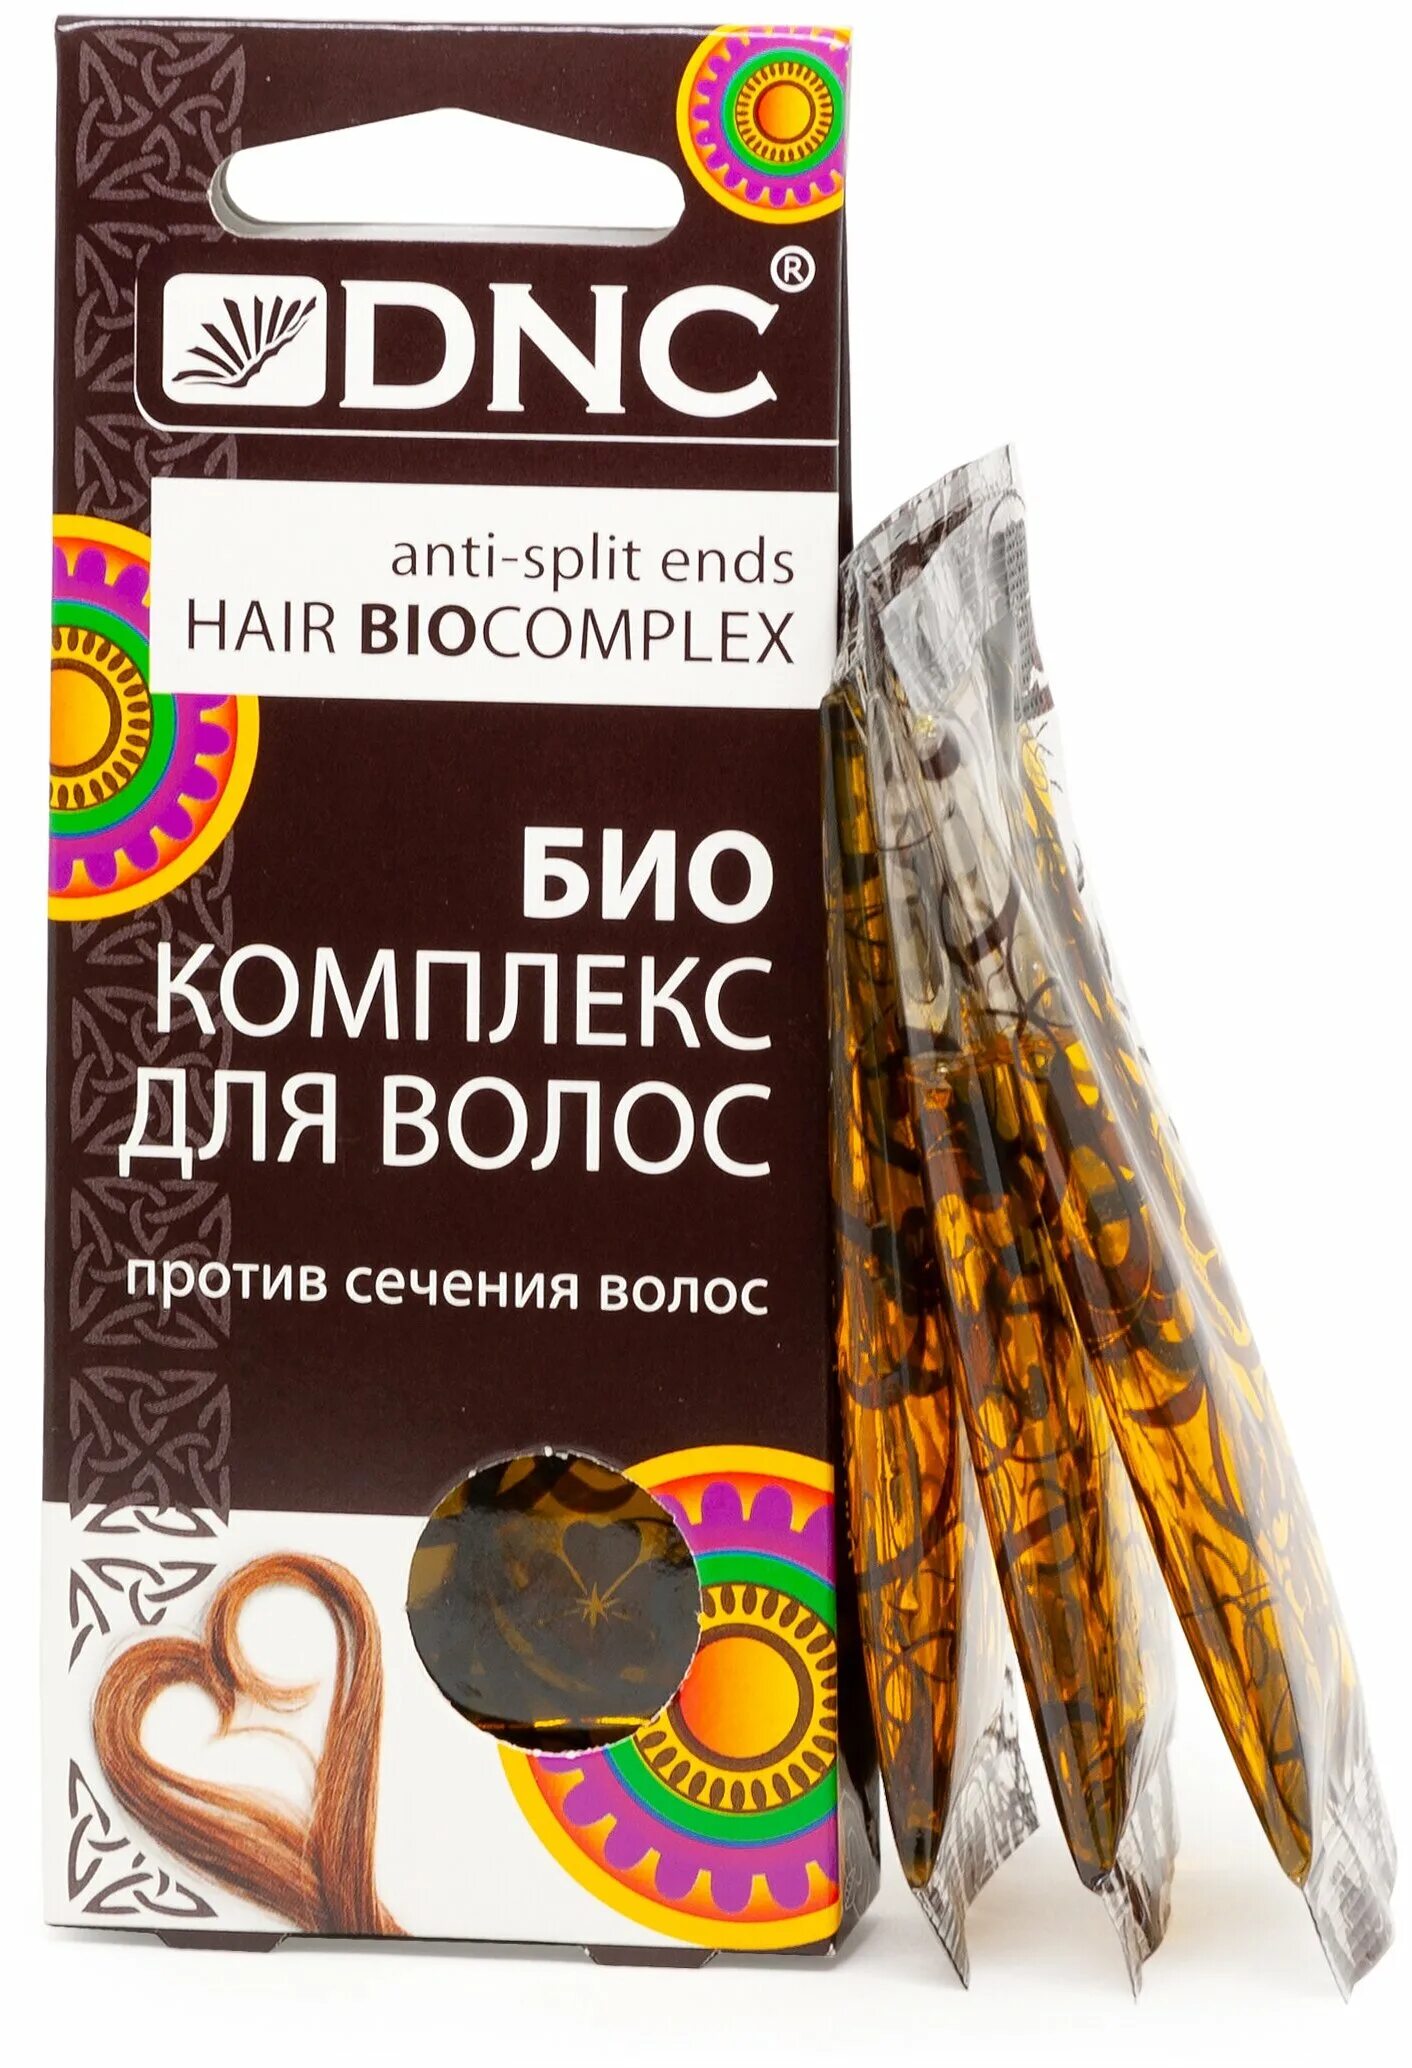 DNC. Биокомплекс для волос, 3*15 мл. Биокомплекс для волос DNC. DNC биокомплекс против выпадения волос 3х15мл. Биокомплекс для волос DNC против сечения волос. Против сечения волос